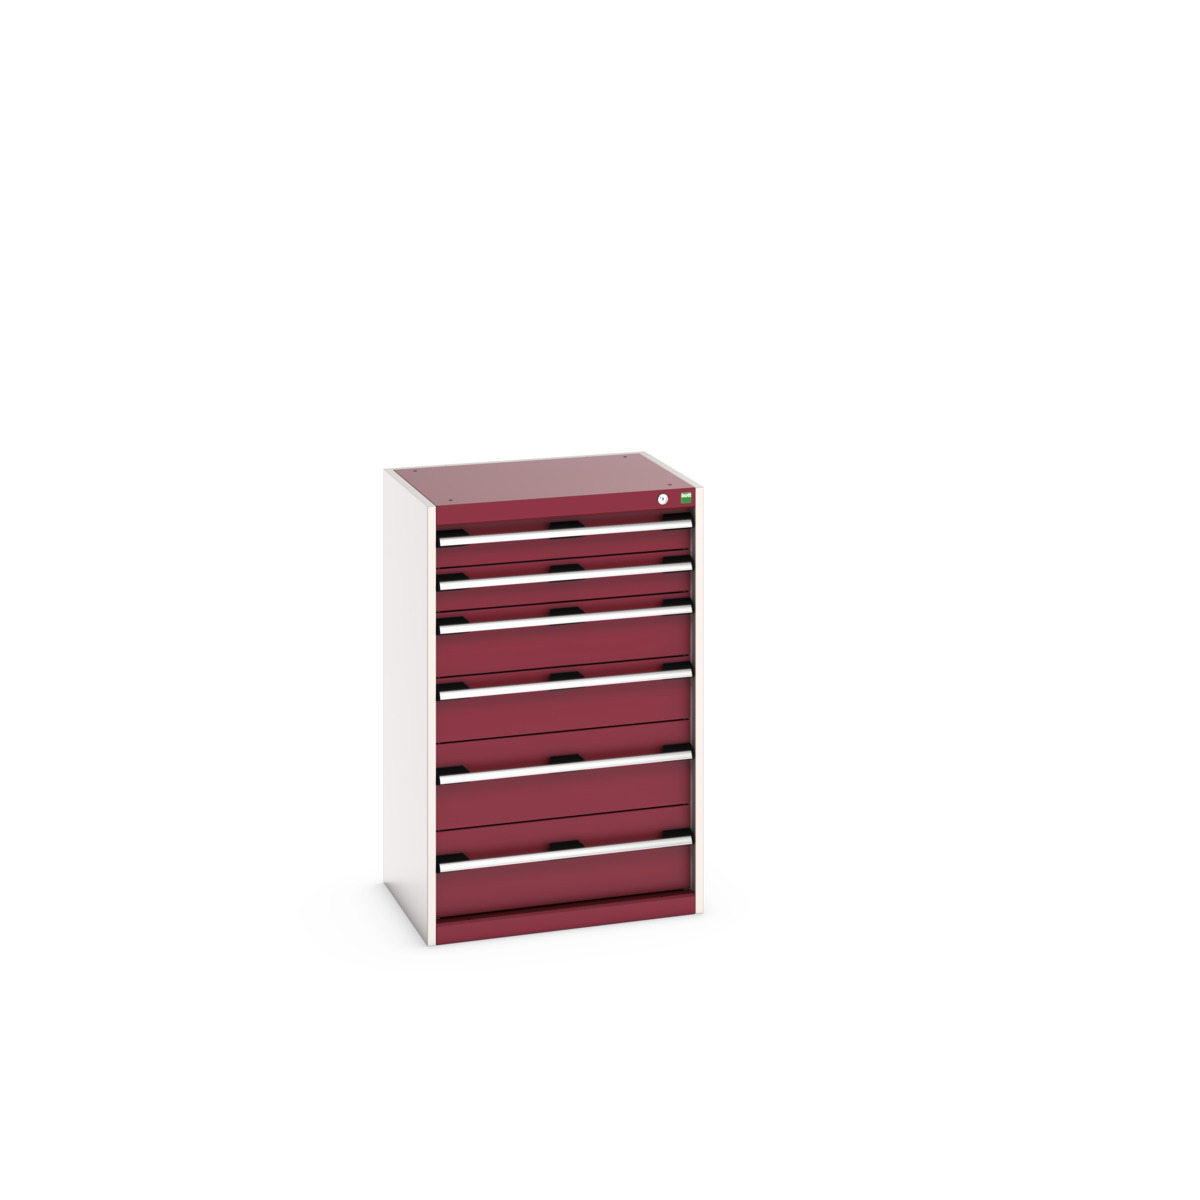 40011054.24V - cubio drawer cabinet